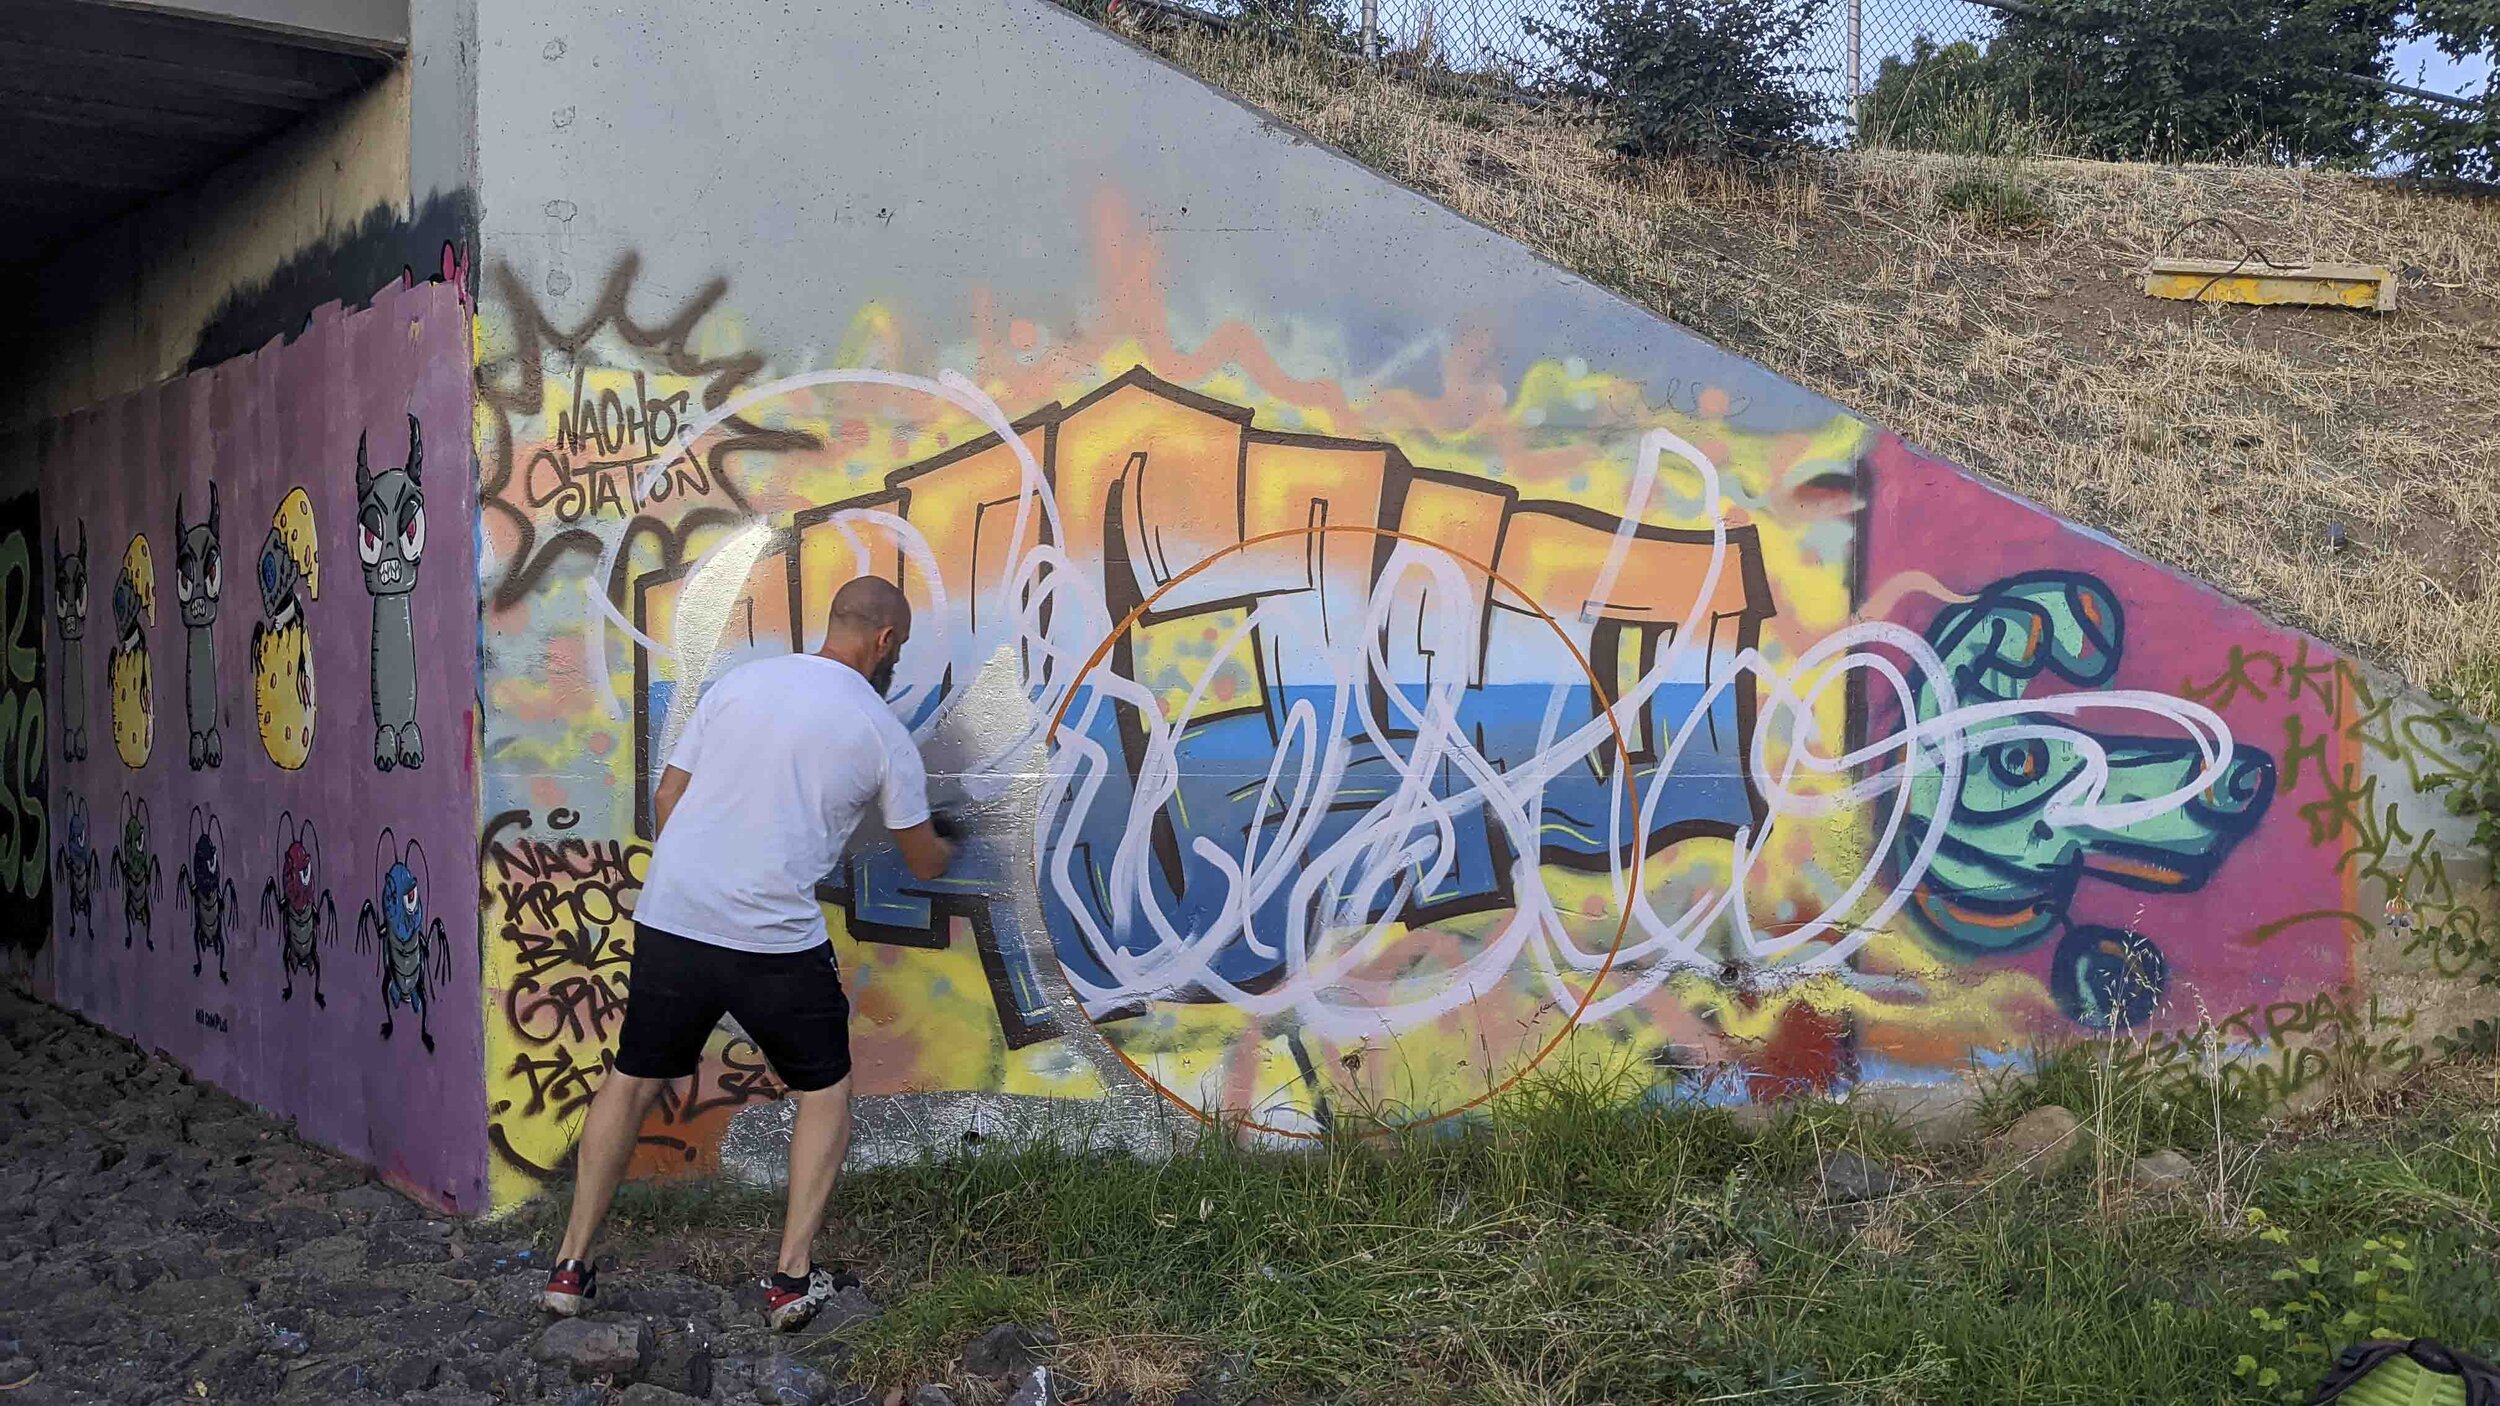 Legal wall bendigo paint jam local graffiti artists street art 2021_12.jpg